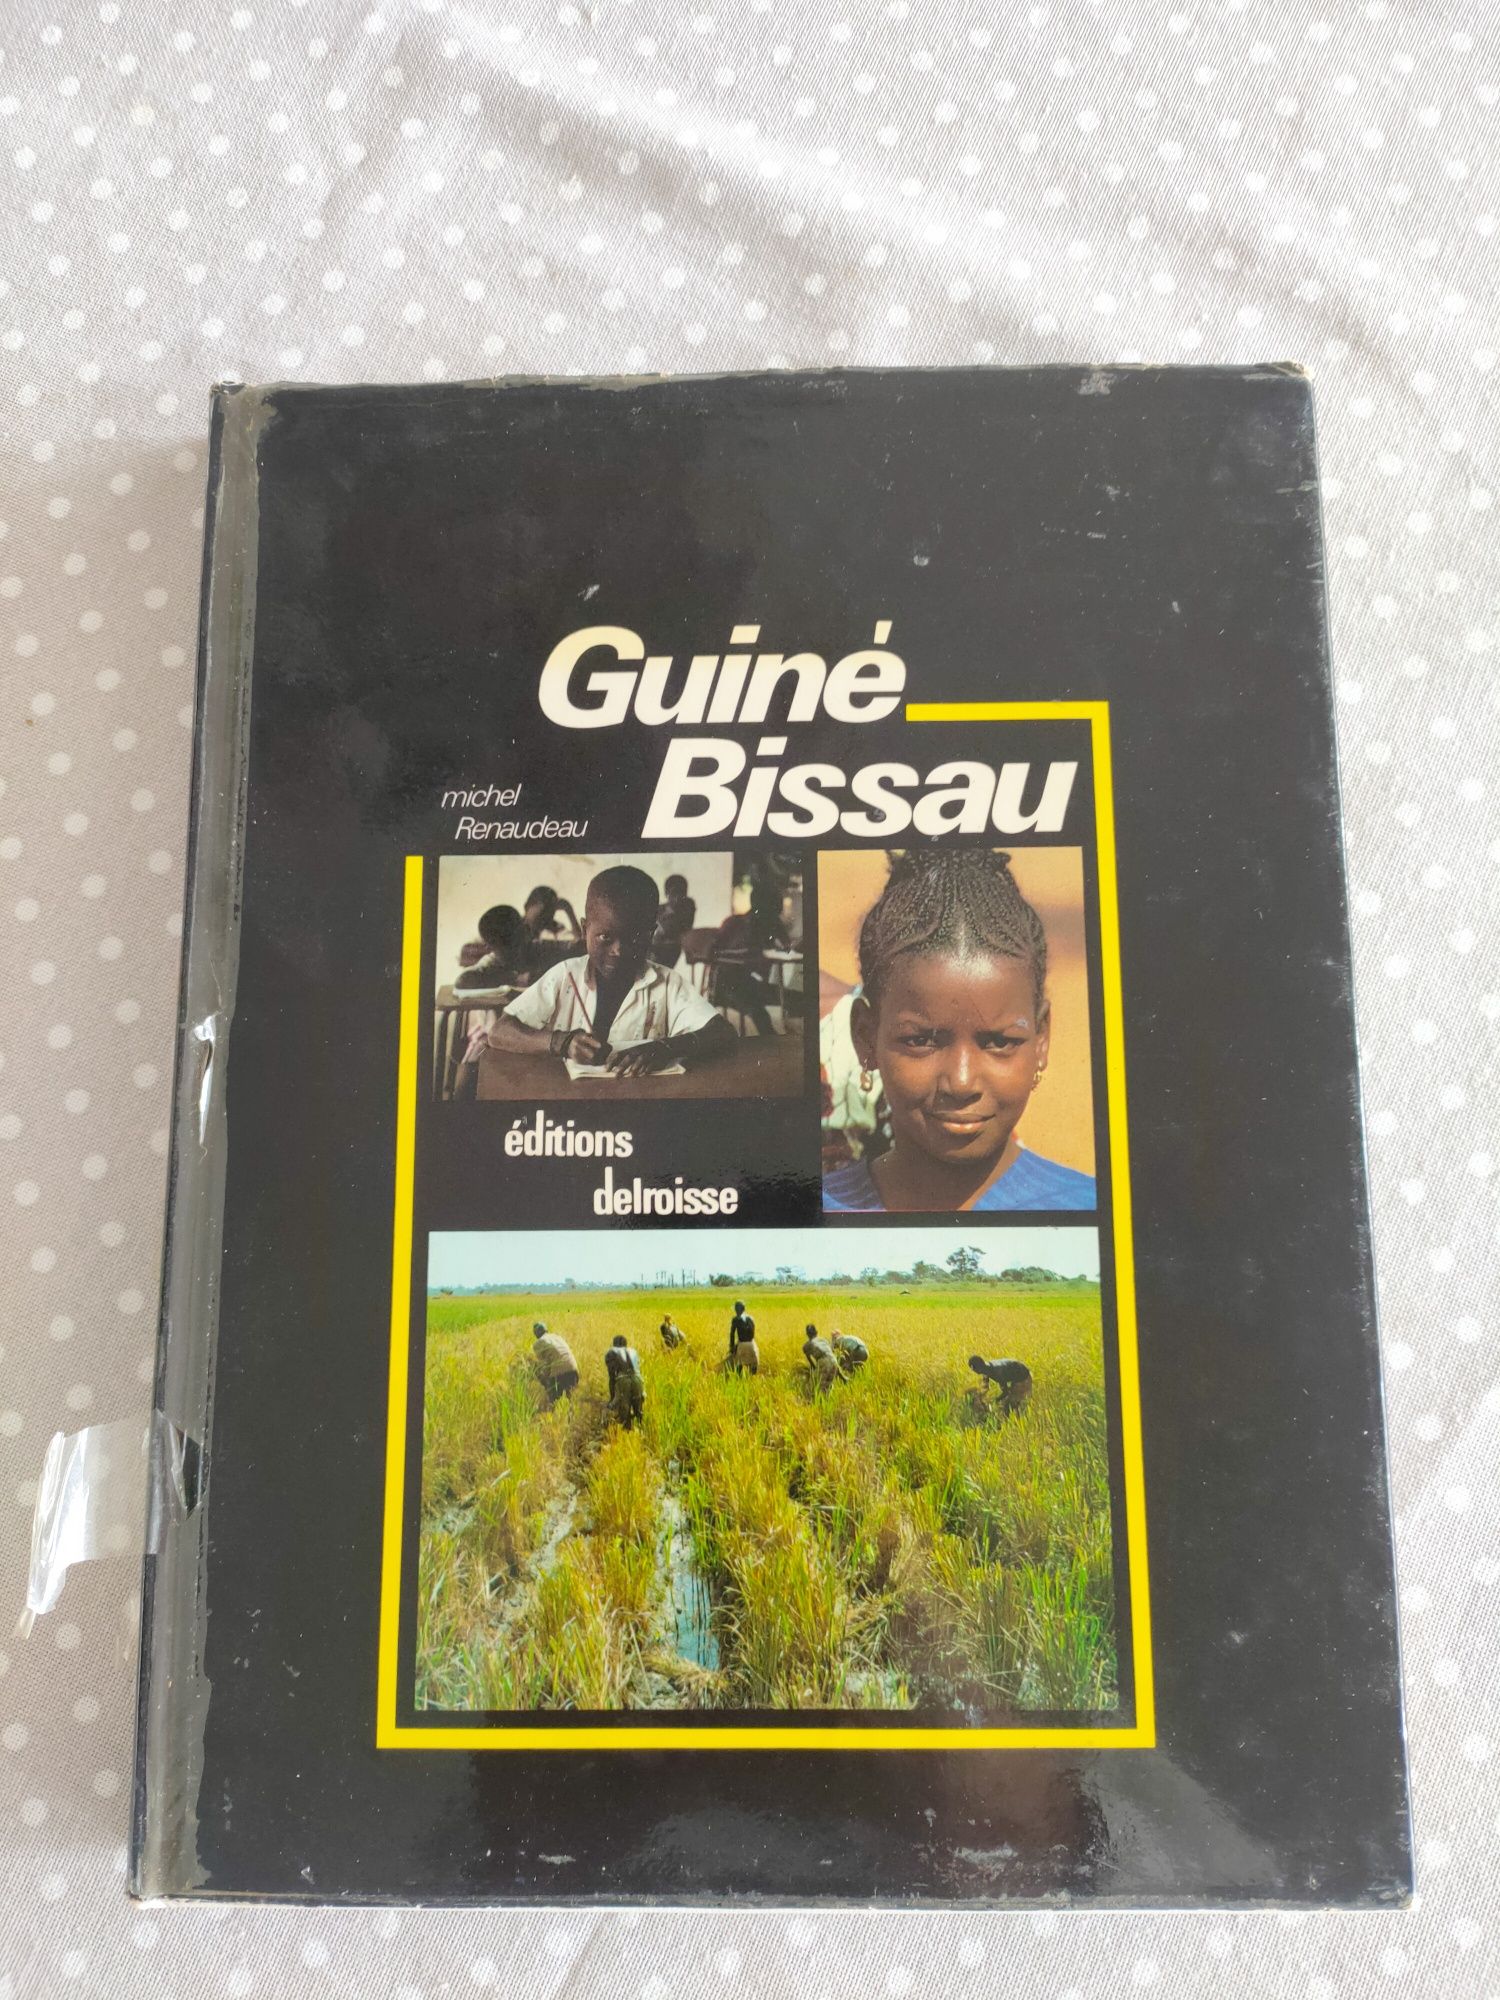 Livro " Guiné Bissau" - éditions delroisse de Michel Renaudeau